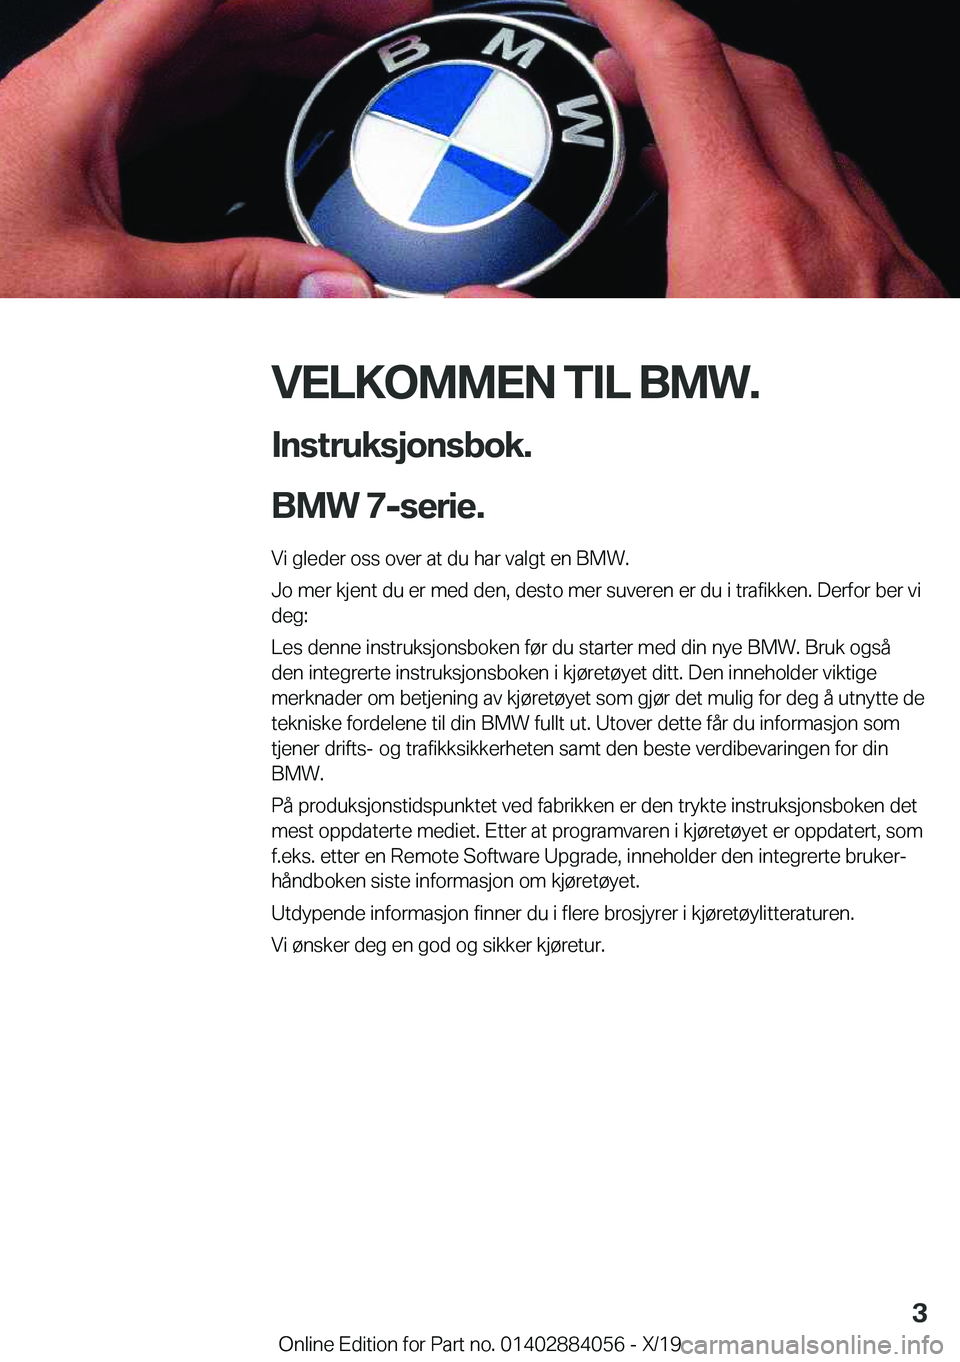 BMW 7 SERIES 2020  InstruksjonsbØker (in Norwegian) �V�E�L�K�O�M�M�E�N��T�I�L��B�M�W�.�I�n�s�t�r�u�k�s�j�o�n�s�b�o�k�.
�B�M�W��7�-�s�e�r�i�e�.
�V�i��g�l�e�d�e�r��o�s�s��o�v�e�r��a�t��d�u��h�a�r��v�a�l�g�t��e�n��B�M�W�.
�J�o��m�e�r��k�j�e�